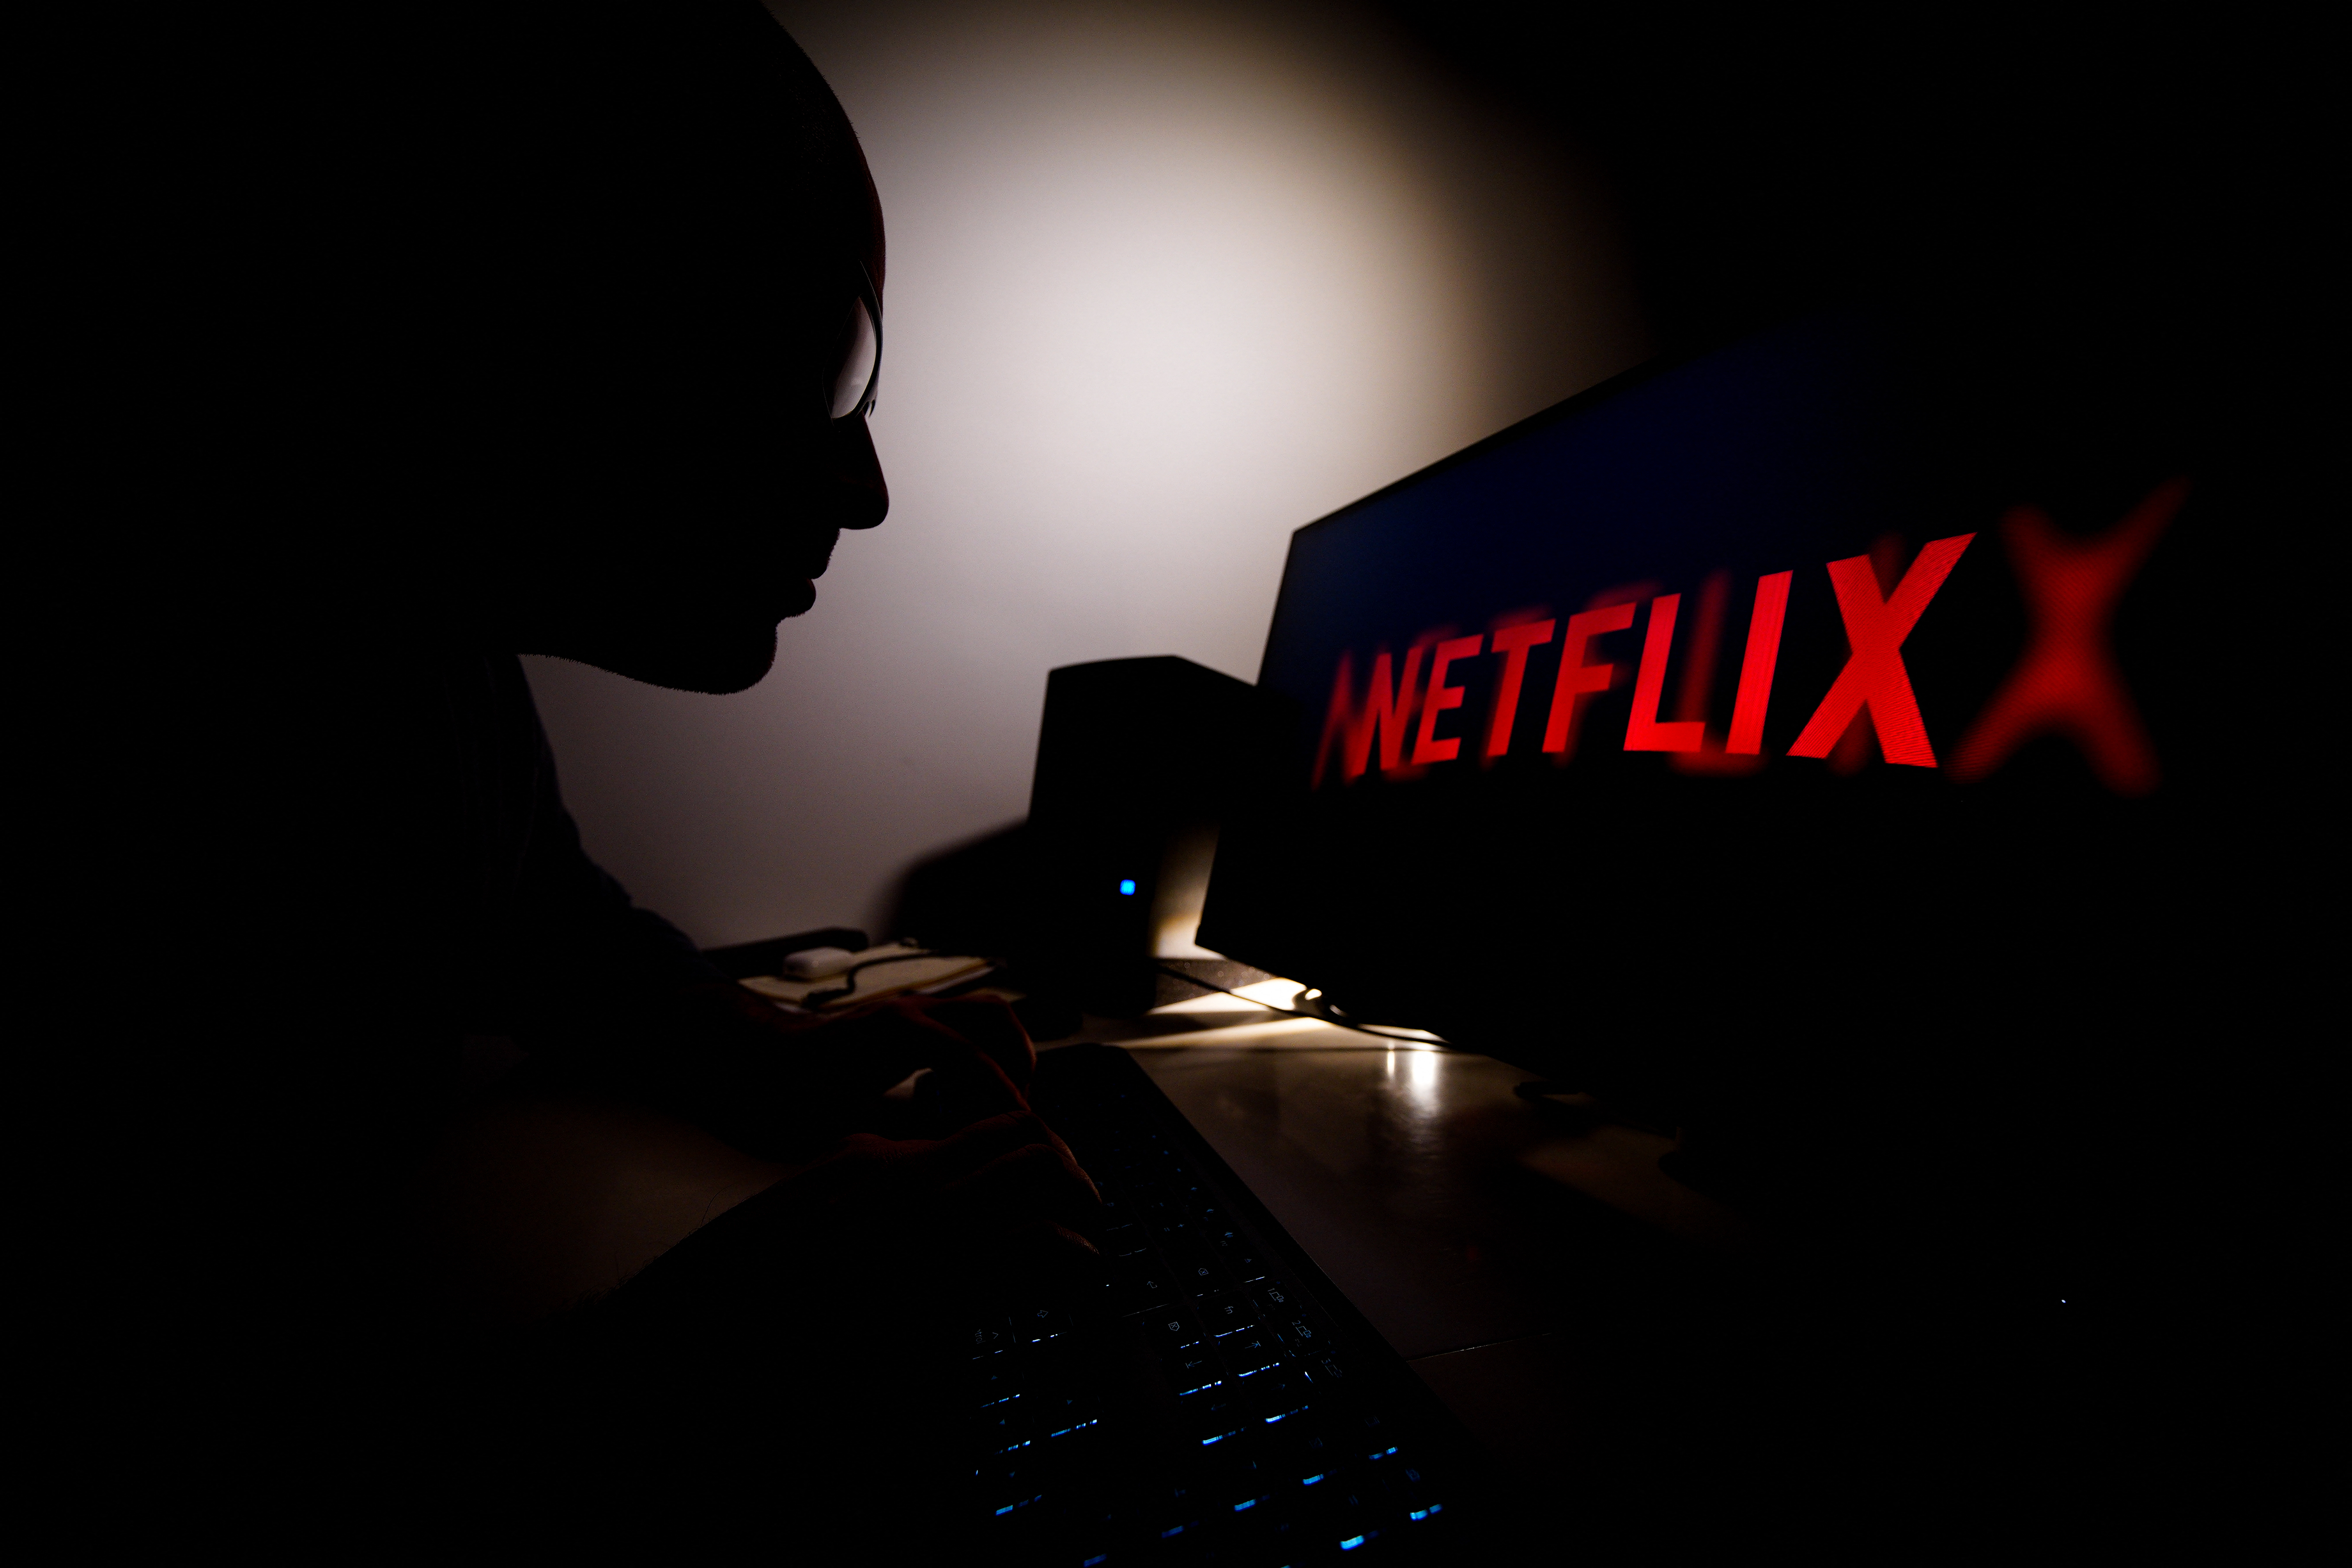 50 milliárd dollárral csökkent a Netflix értéke az előfizetők kilépése miatt